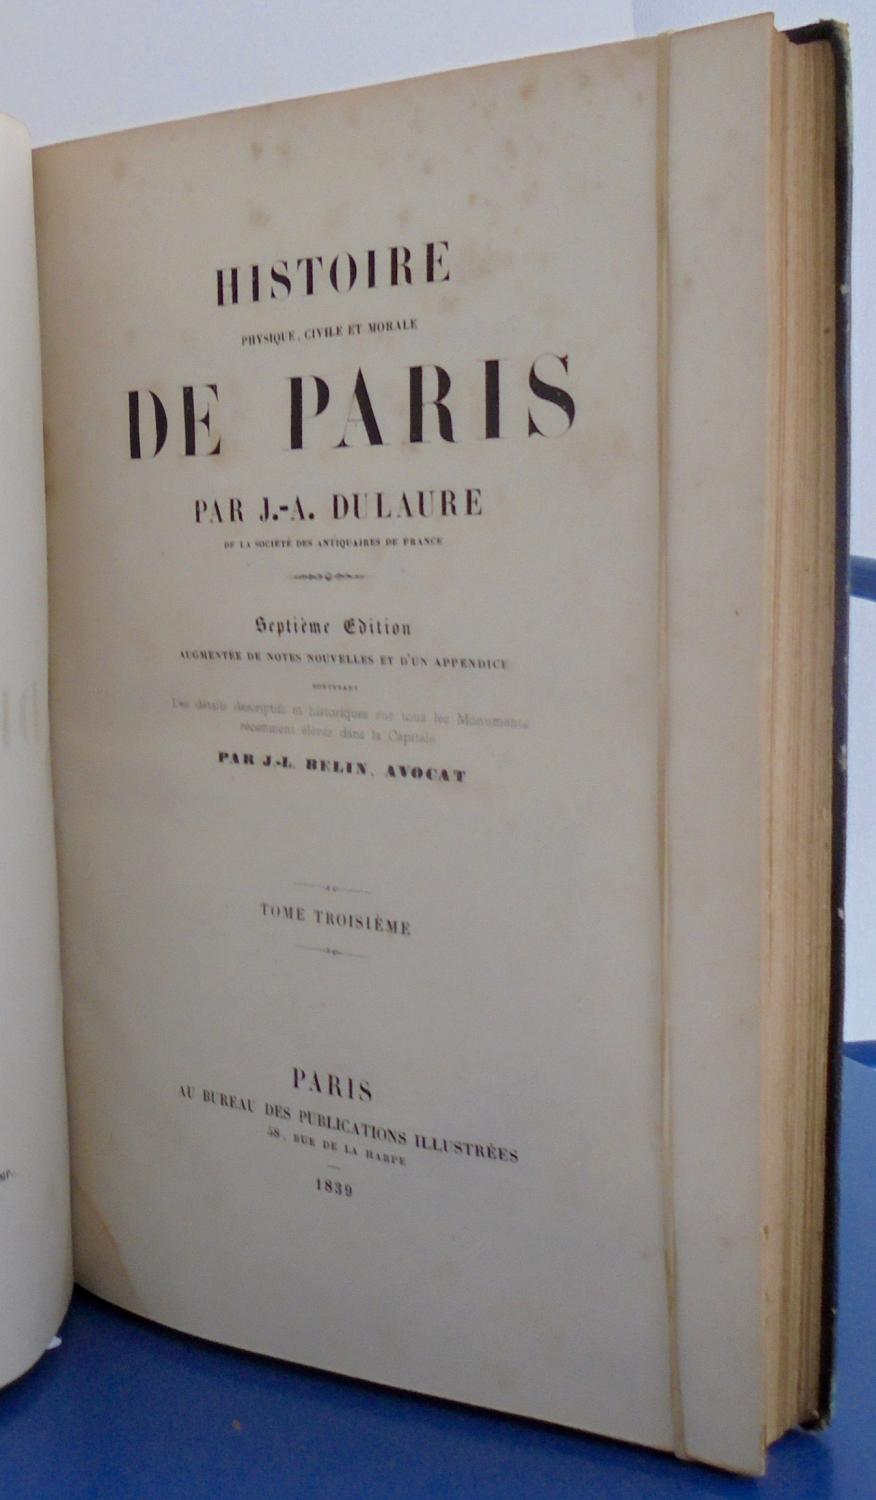 Histoire physique, civile et morale de Paris, tome 3, by J. B. DULAURE ...